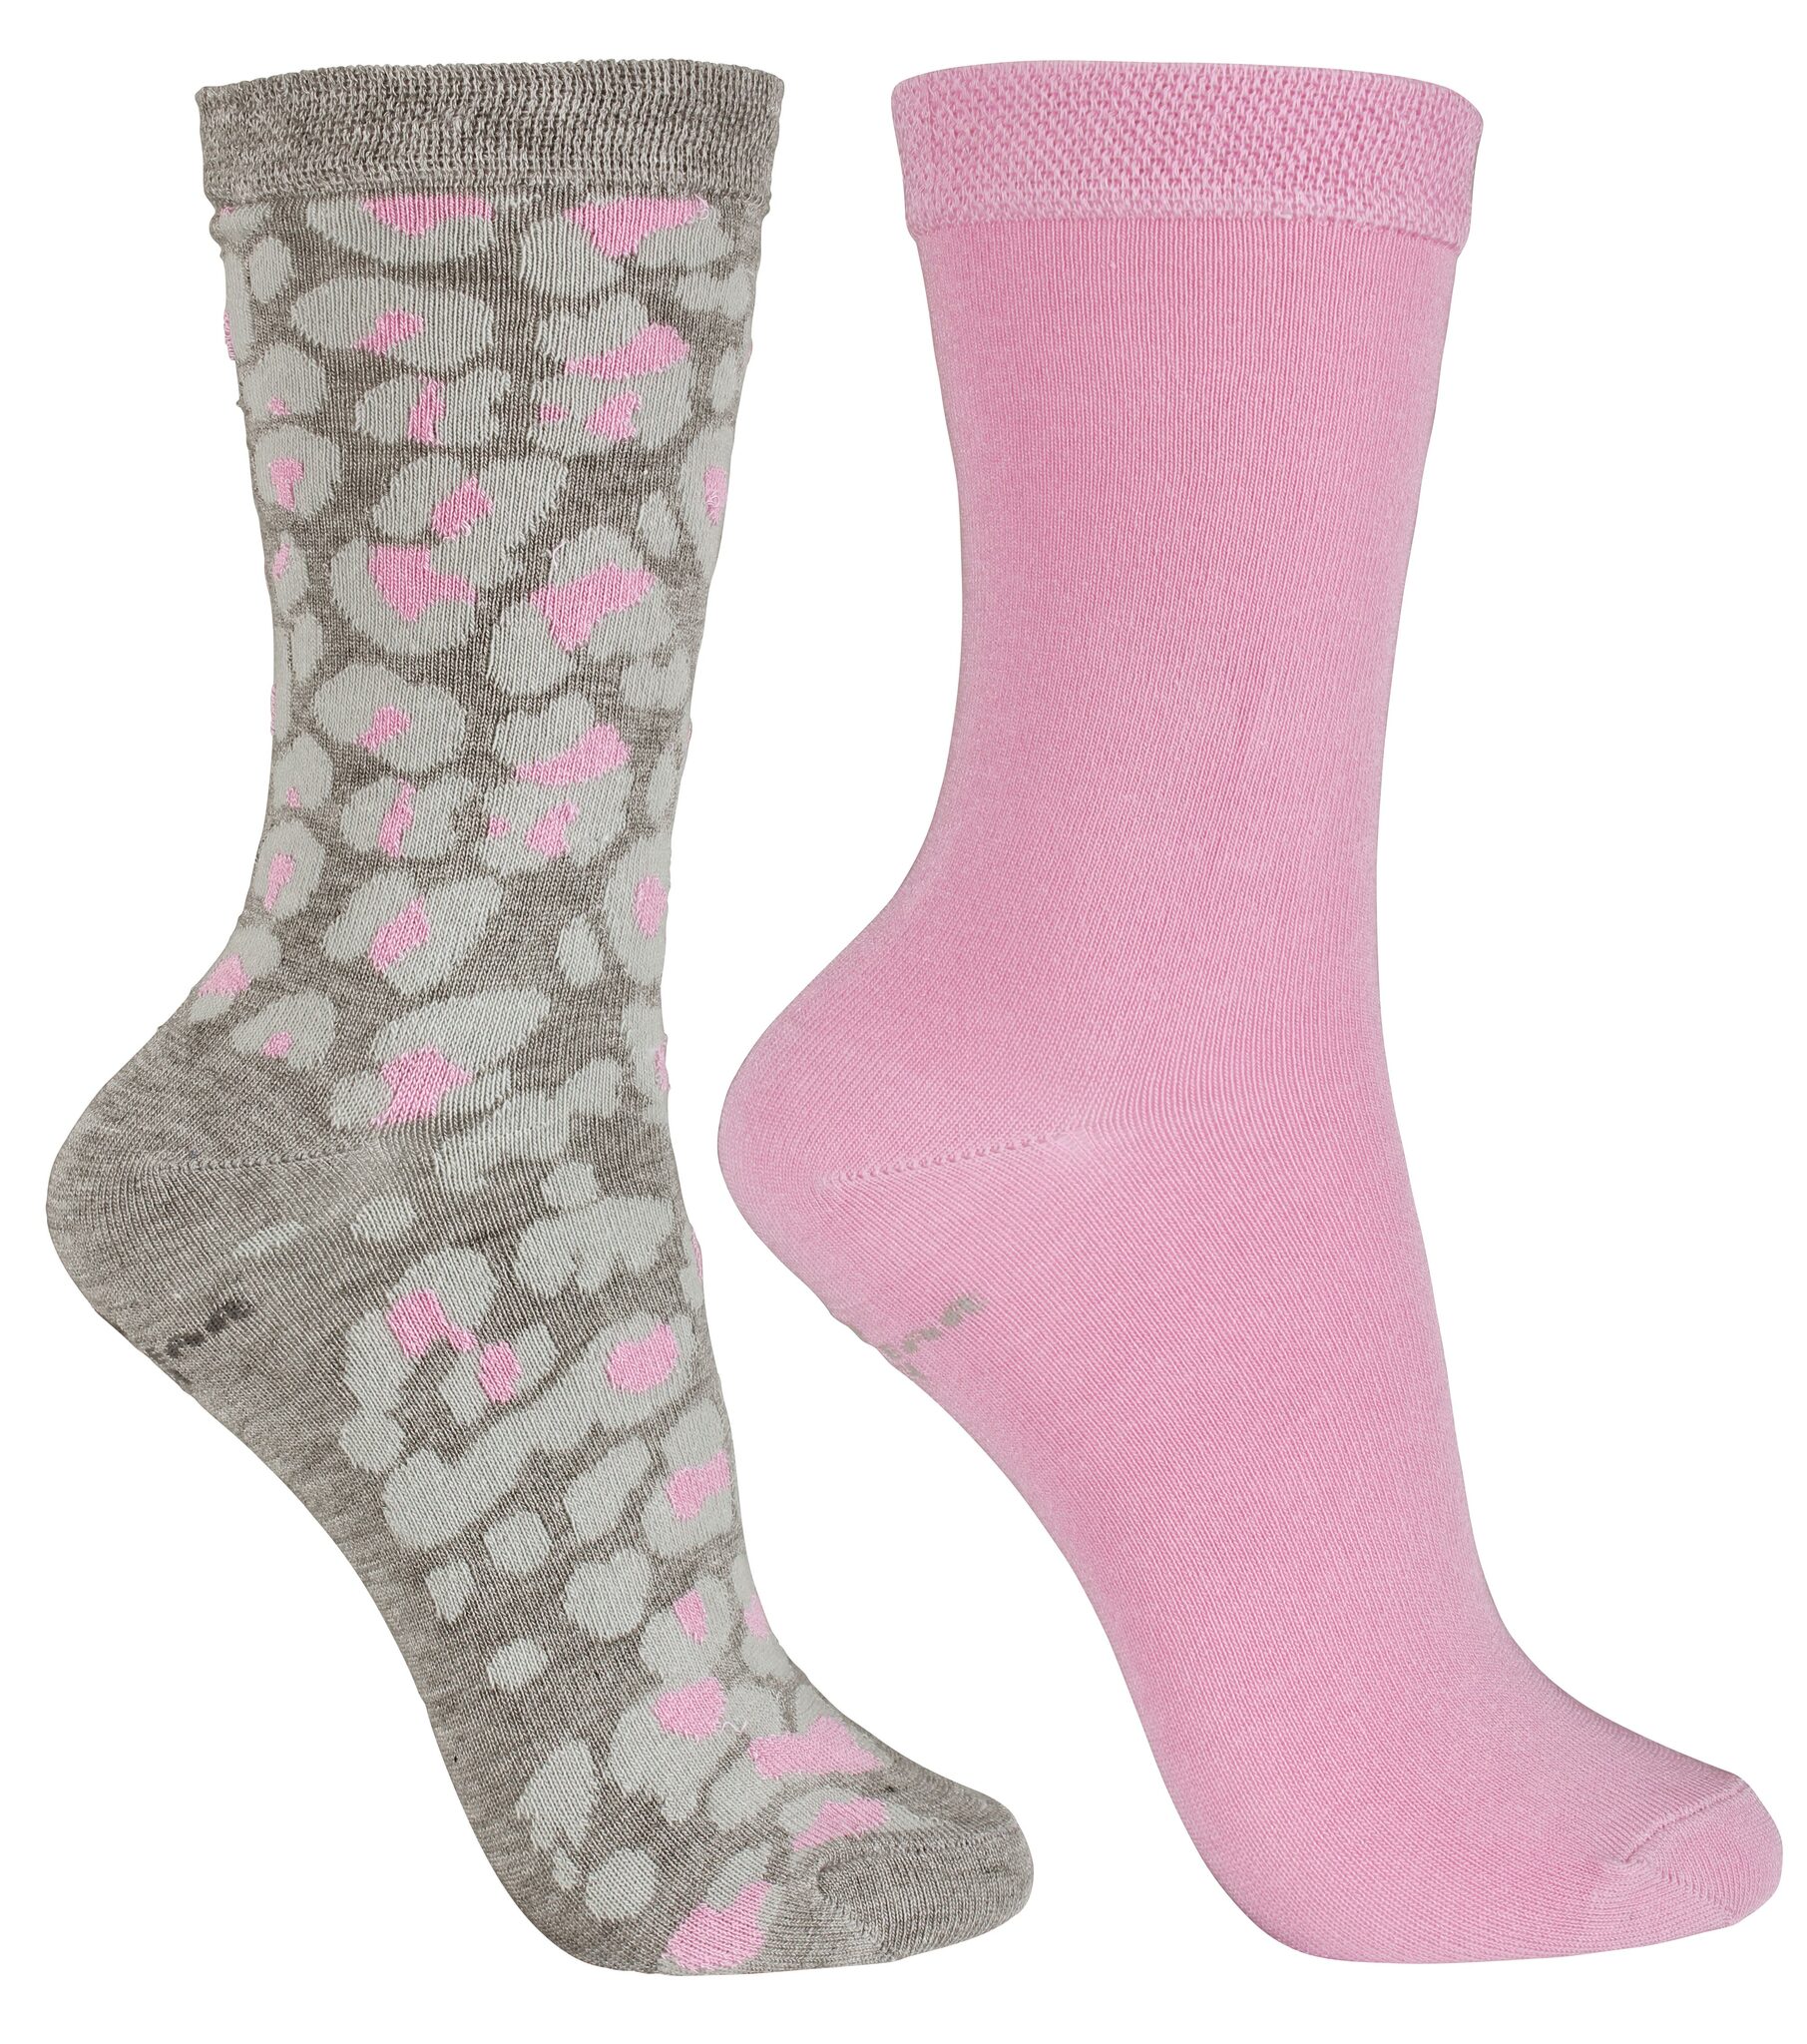 2-pack strumpor i storlek 27-30. En enfärgad rosa och en mönstrad med grå botten och ljusgrå och rosa fläck